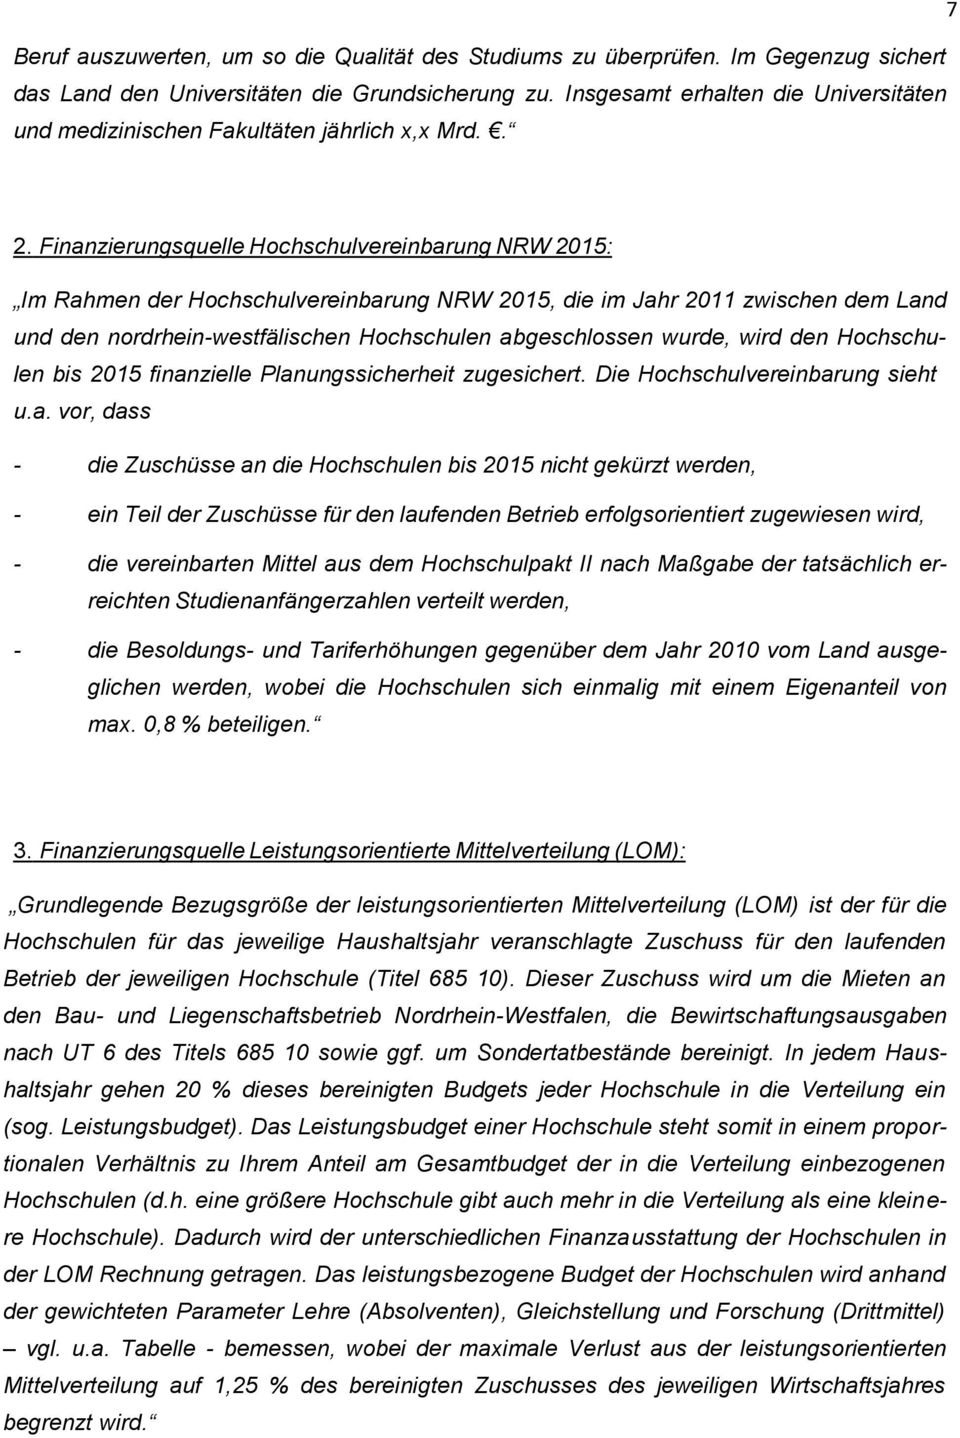 Finanzierungsquelle Hchschulvereinbarung NRW 2015: Im Rahmen der Hchschulvereinbarung NRW 2015, die im Jahr 2011 zwischen dem Land und den nrdrhein-westfälischen Hchschulen abgeschlssen wurde, wird